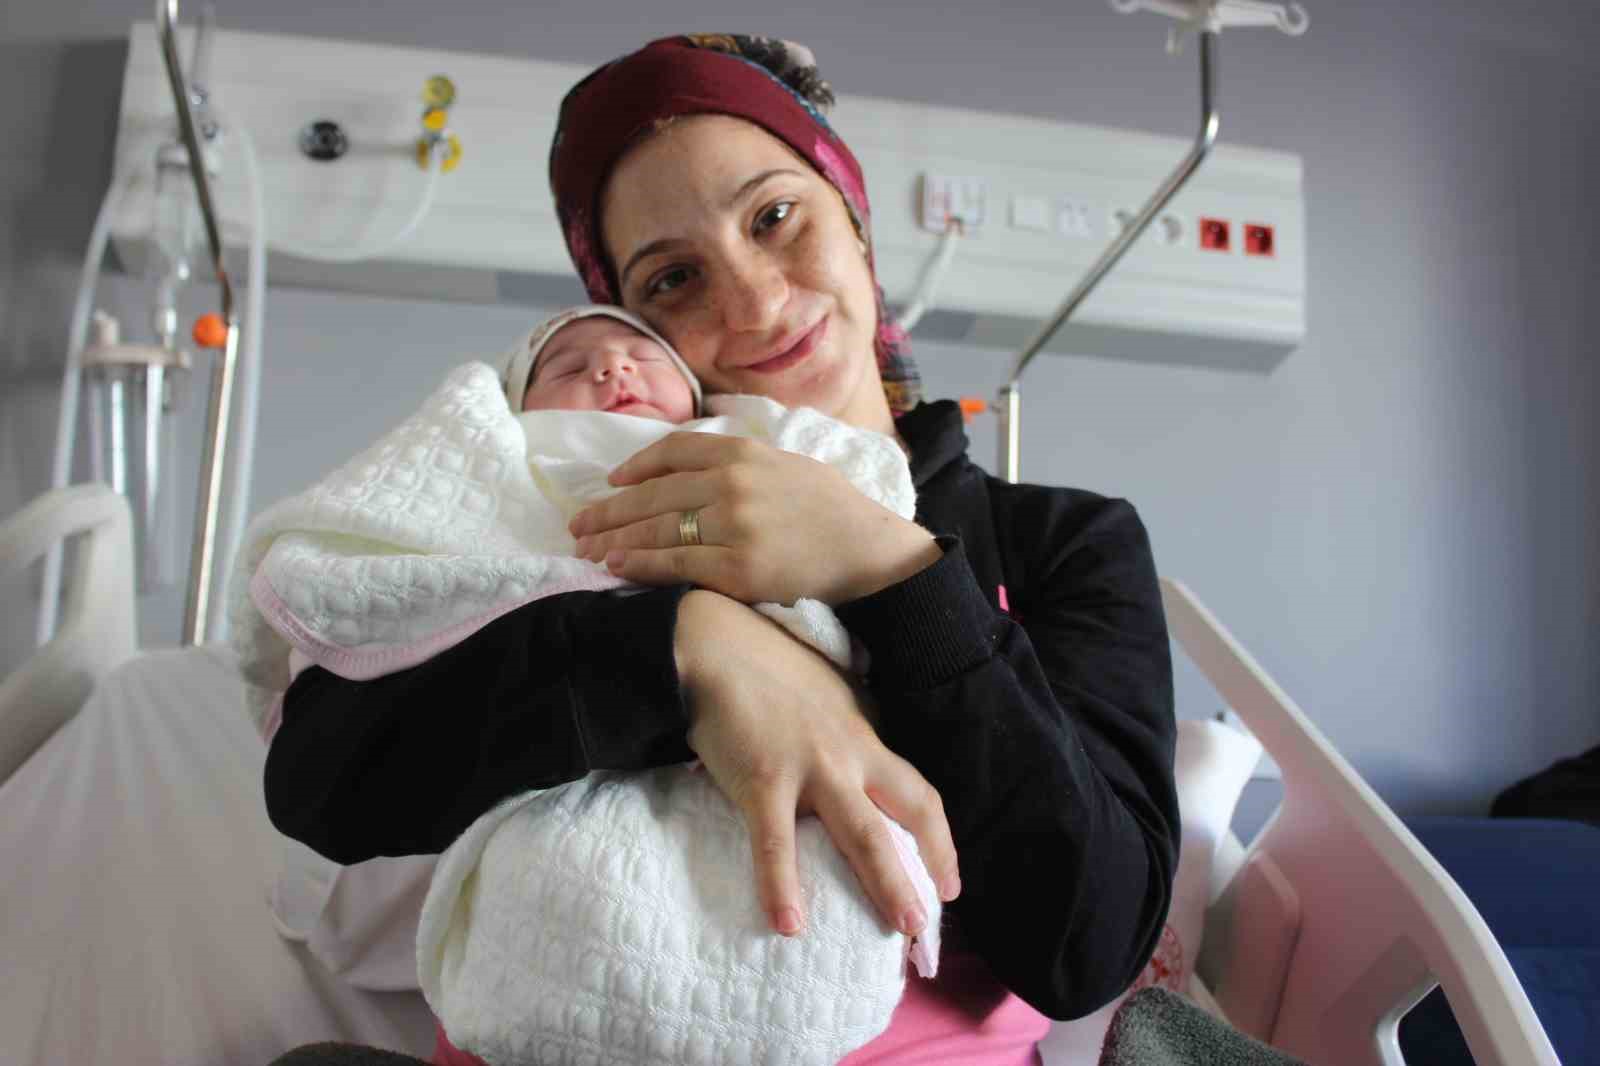 Hatay Defne Devlet Hastanesi'nde 29 Şubat'ta "artık gün" olarak bilinen tarihte Ayşe ismi verilen bir bebek dünyaya geldi. 